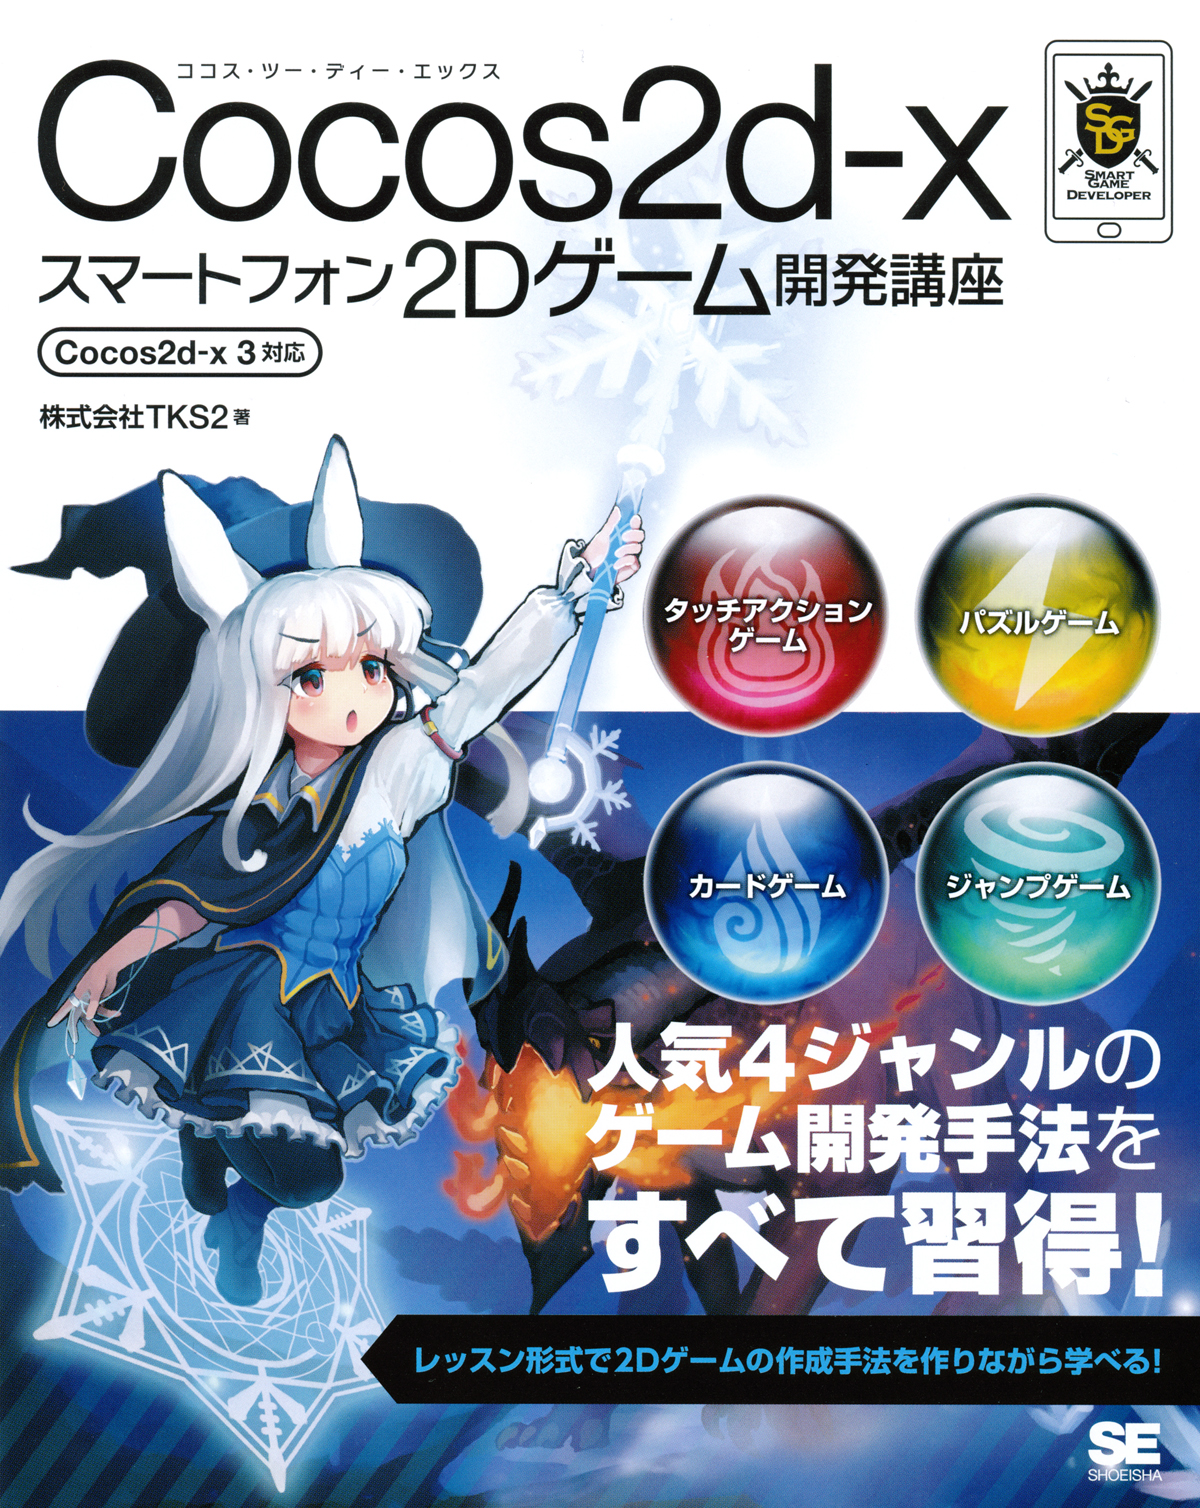 Cocos2d Xスマートフォン2dゲーム開発講座 Cocos2d X 3対応 株式会社tks2 翔泳社の本